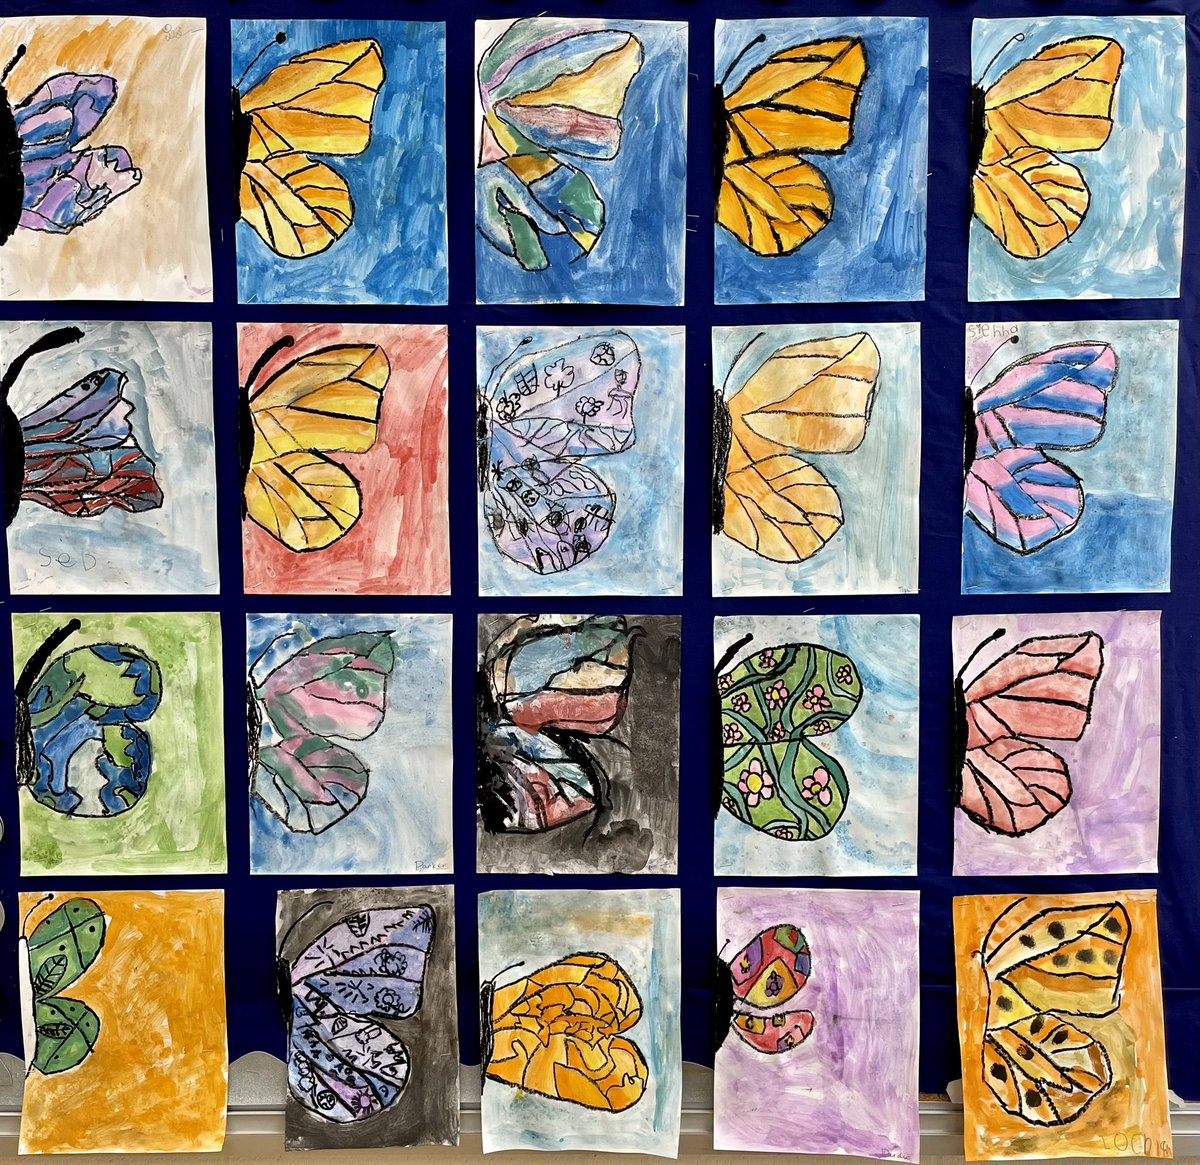 Beautiful butterflies… 🦋 
Oil pastel with watercolours
#MySilverCreek